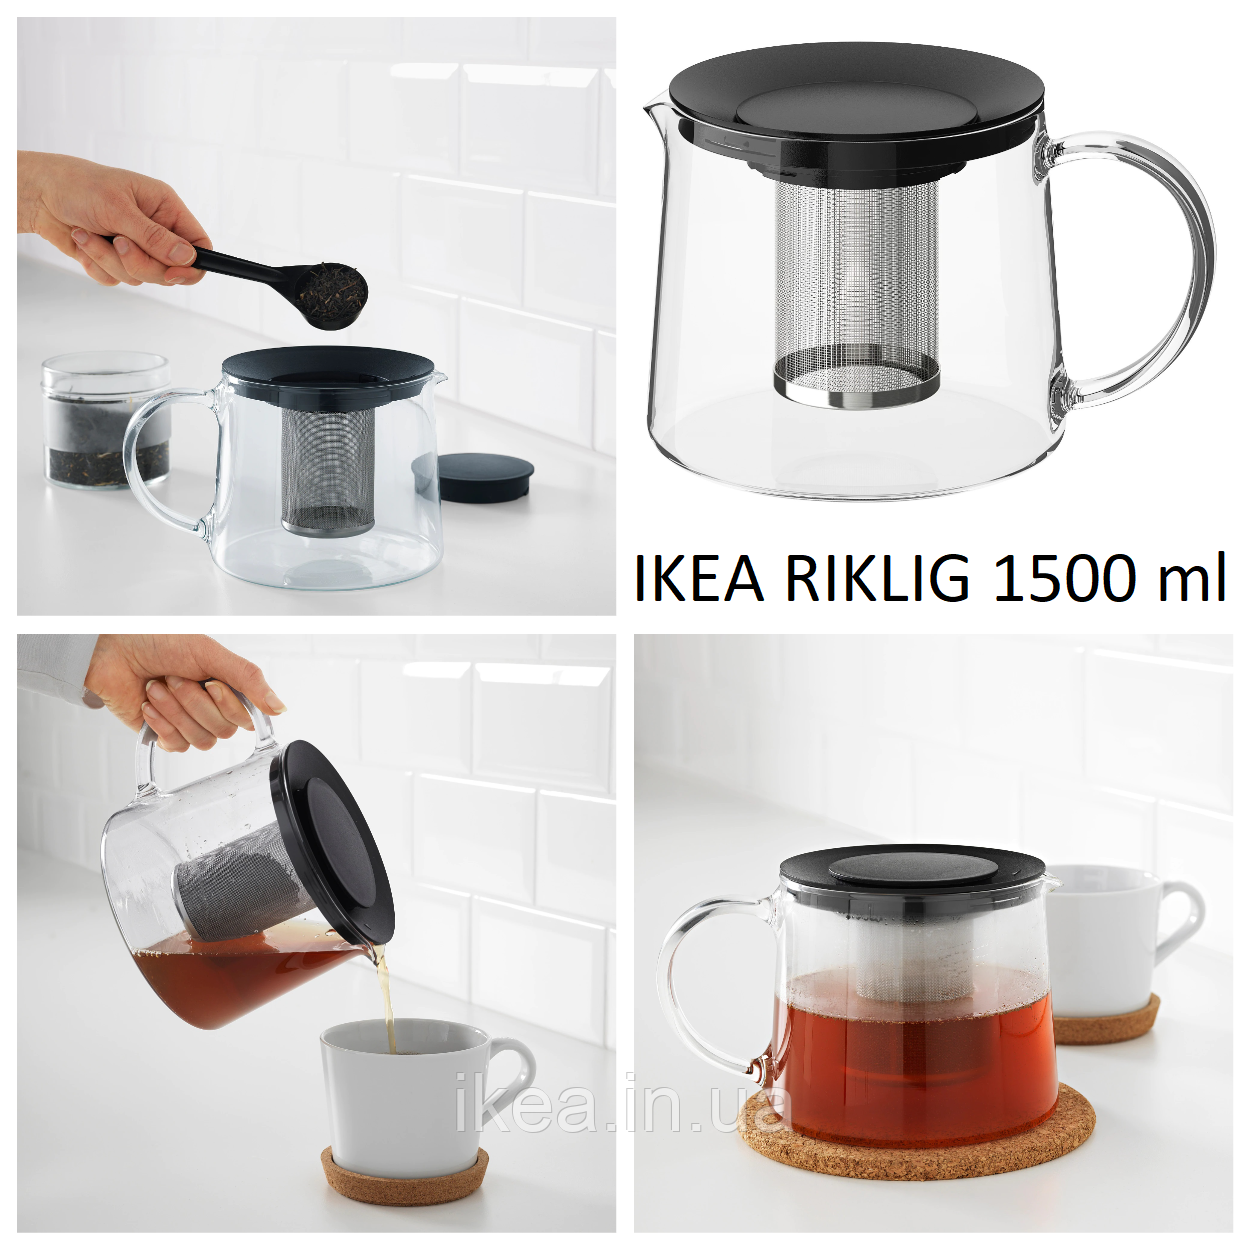 Заварювальний чайник 1500 мл IKEA RIKLIG скляний чайник для заварювання заварник 1,5 літра ІКЕА РІКЛІГ